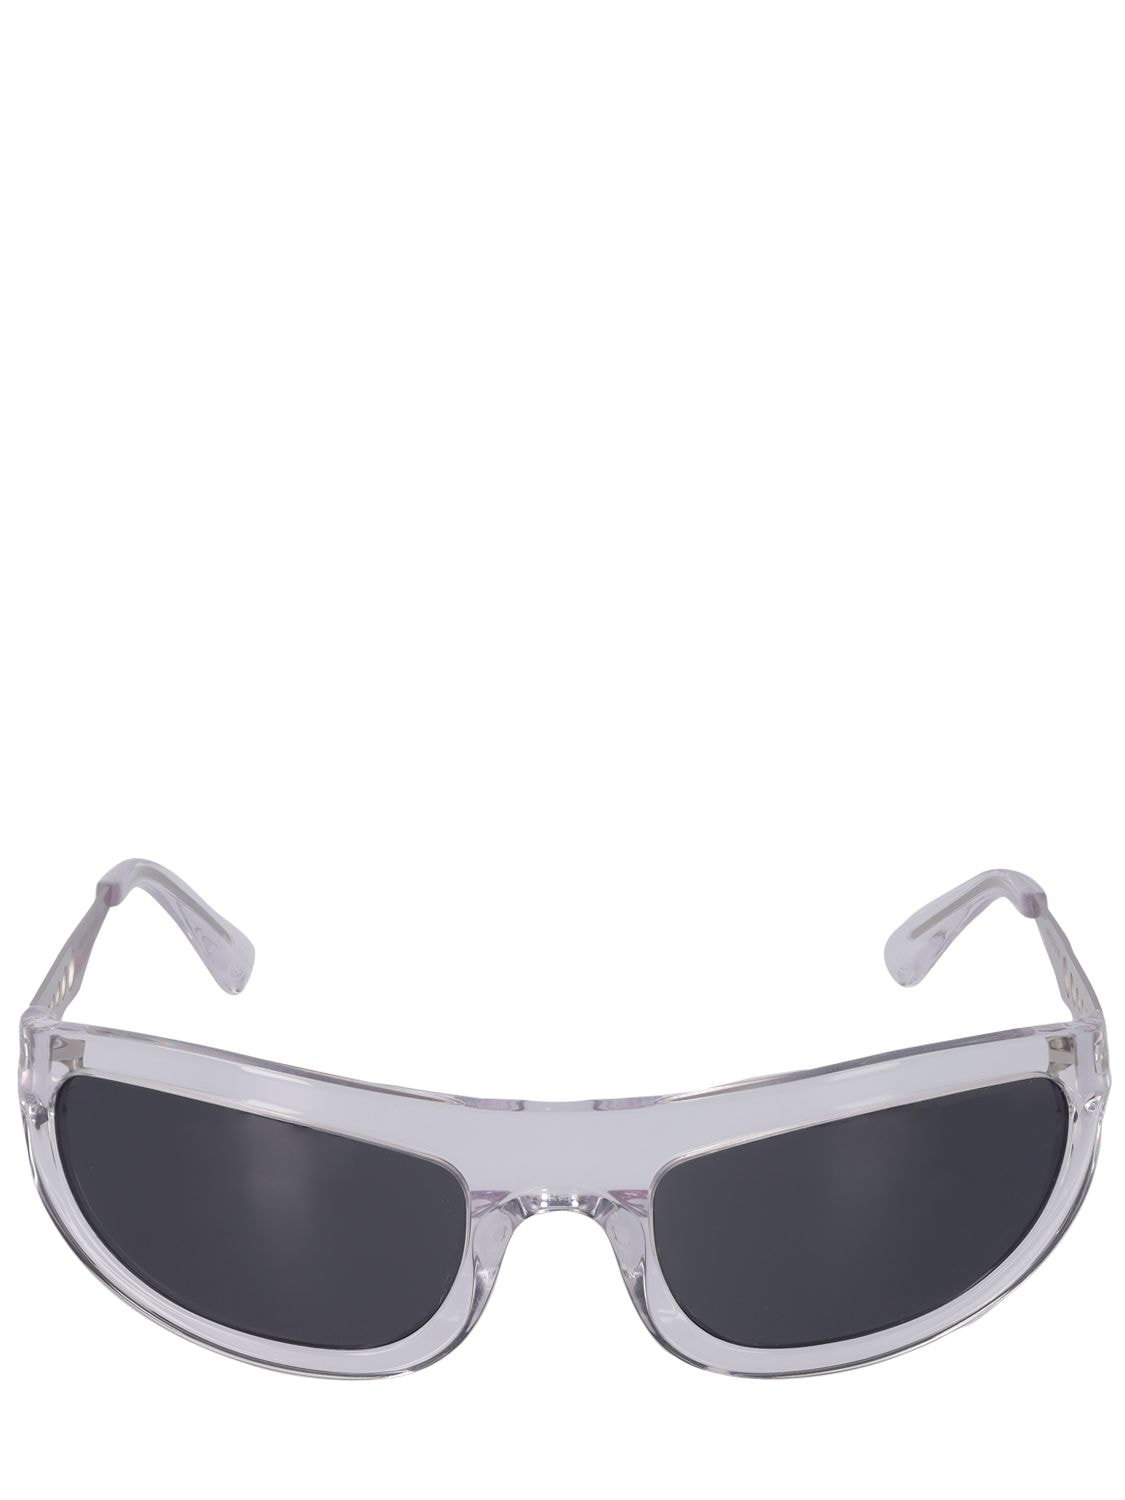 A Better Feeling Corten Glacial Steel Sunglasses